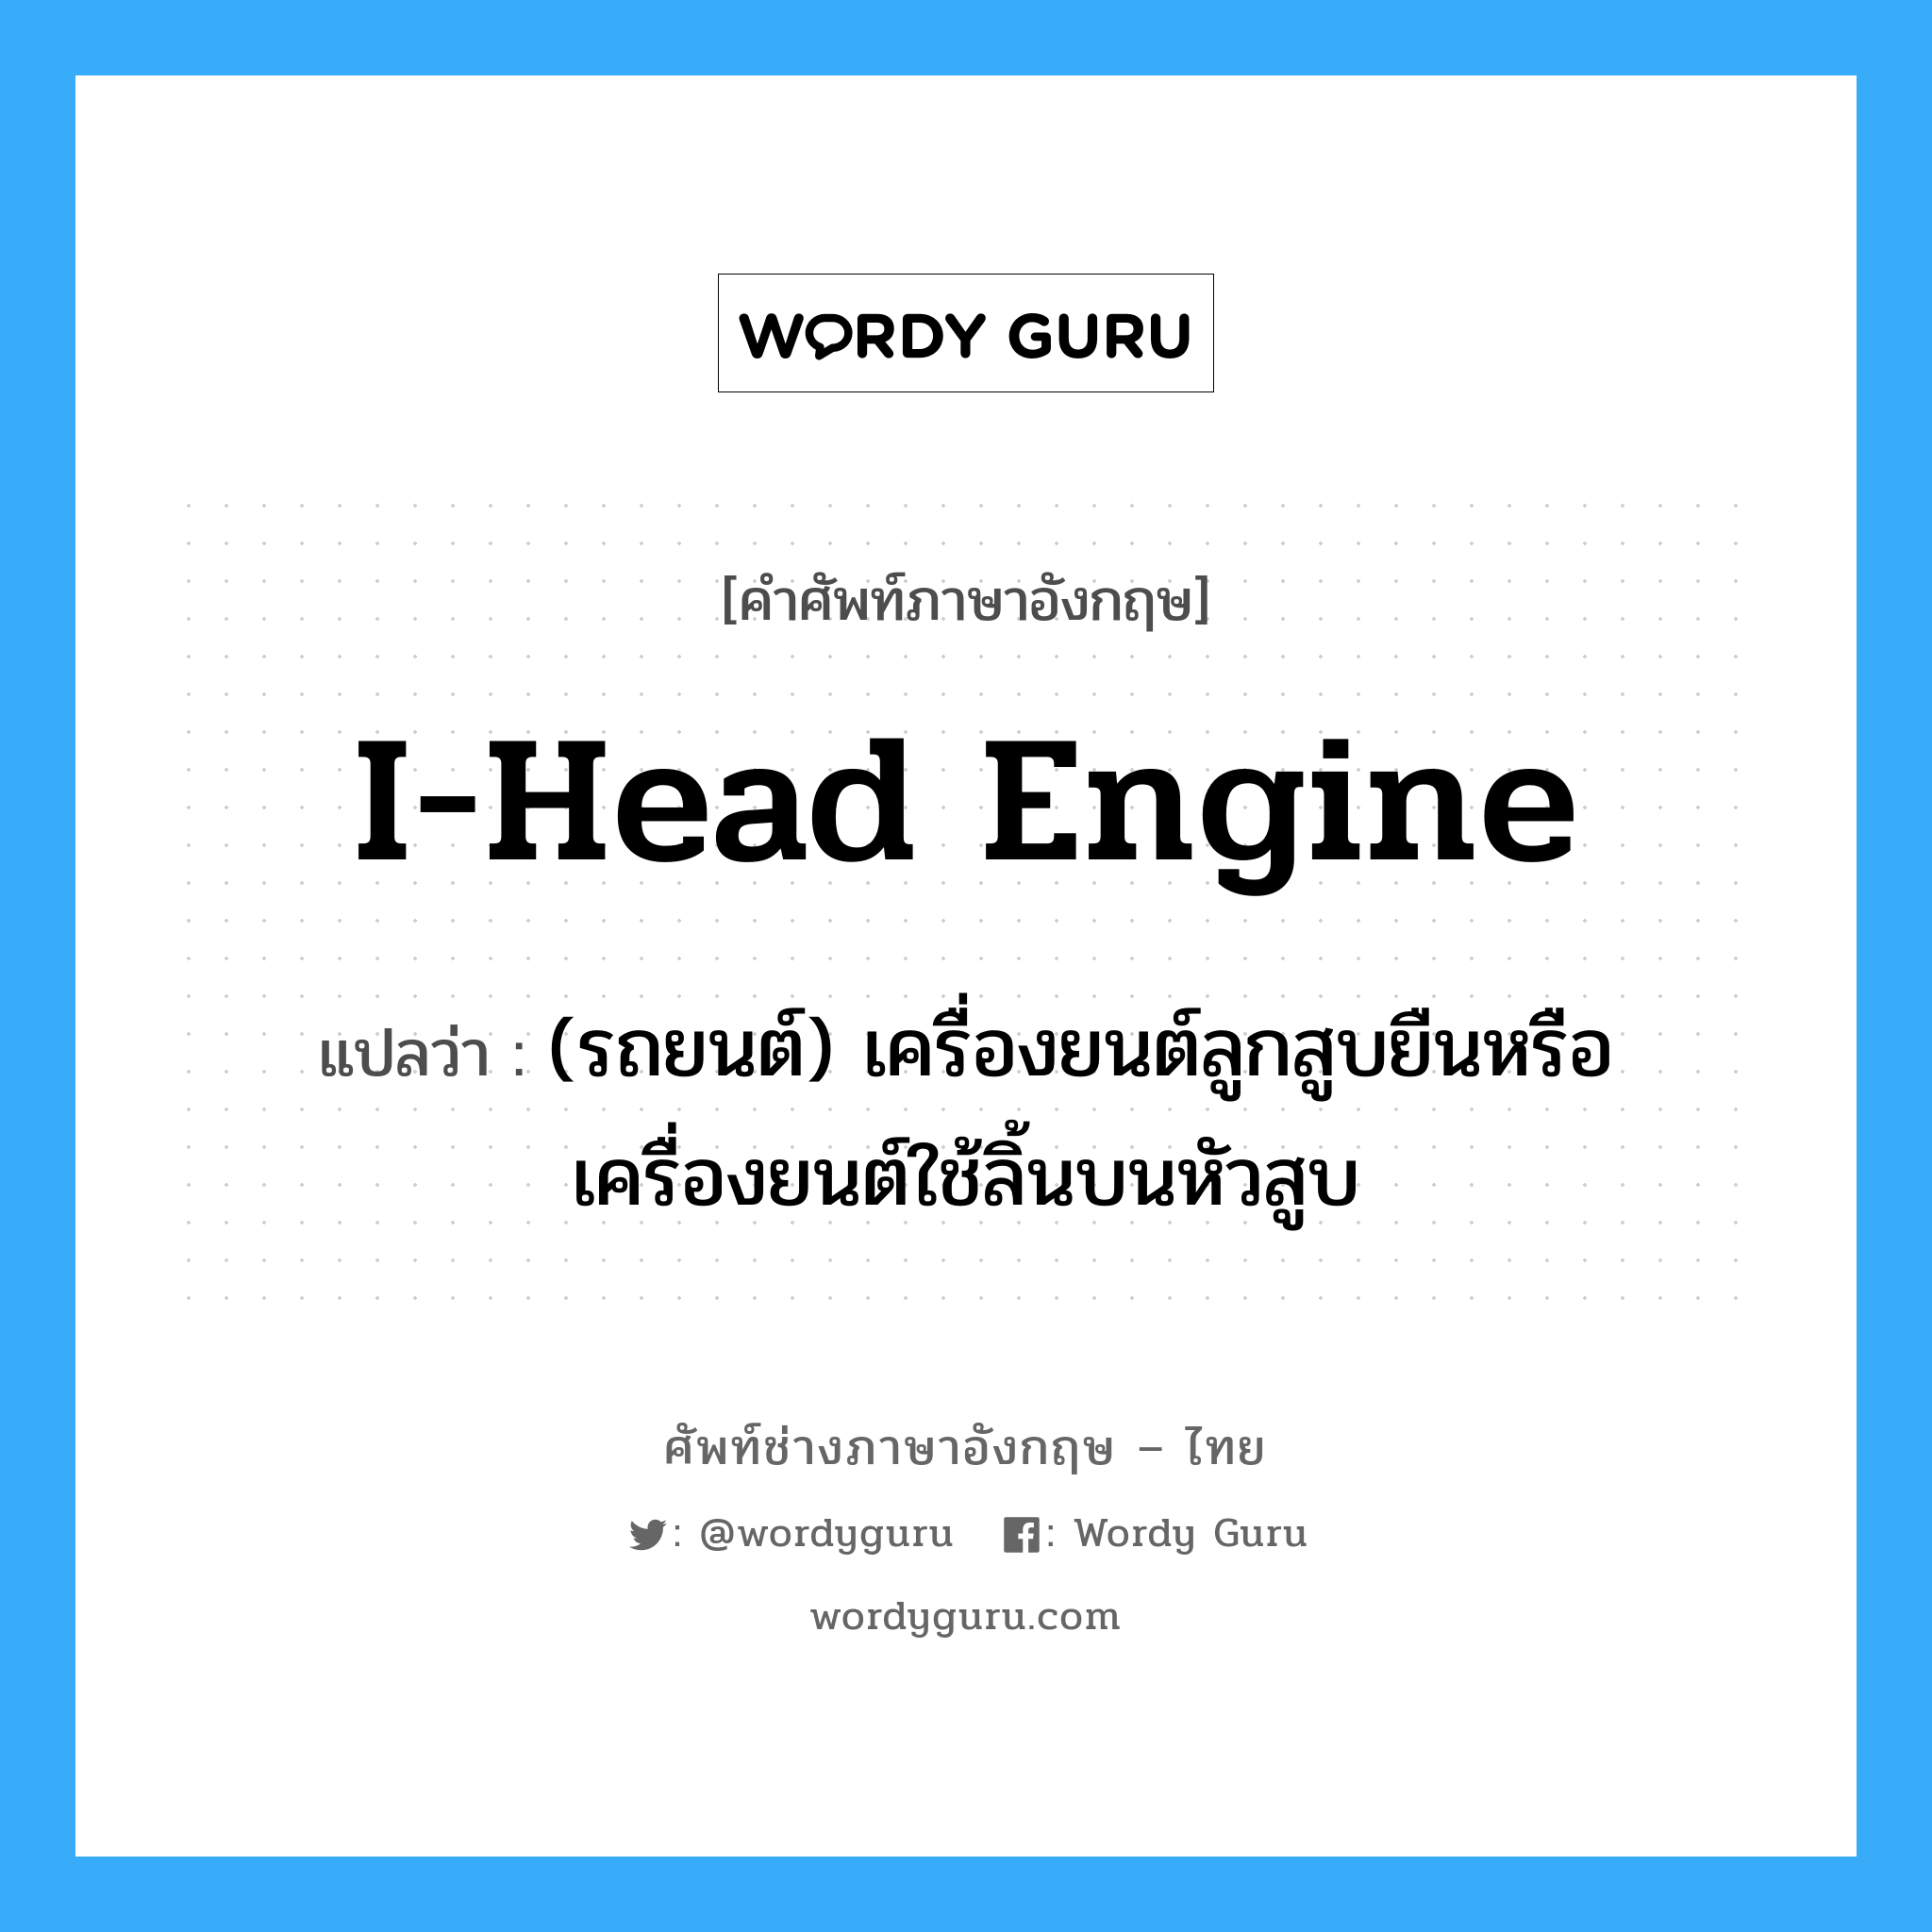 I-head engine แปลว่า?, คำศัพท์ช่างภาษาอังกฤษ - ไทย I-head engine คำศัพท์ภาษาอังกฤษ I-head engine แปลว่า (รถยนต์) เครื่องยนต์ลูกสูบยืนหรือเครื่องยนต์ใช้ลิ้นบนหัวสูบ